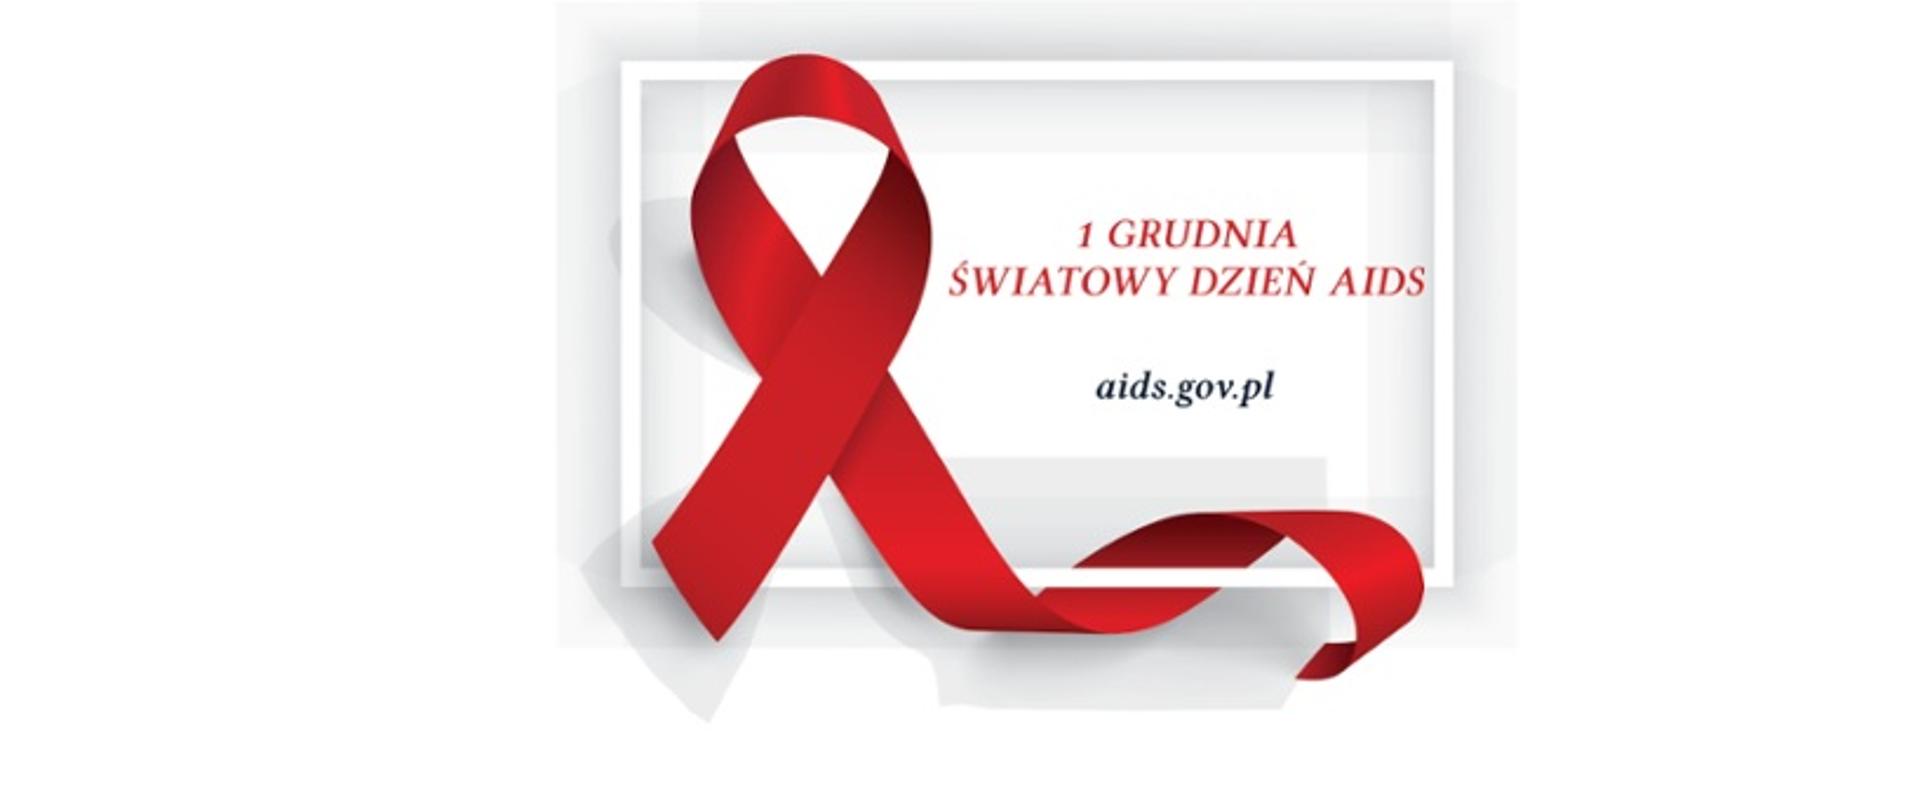 1 grudnia światowy dzień AIDS